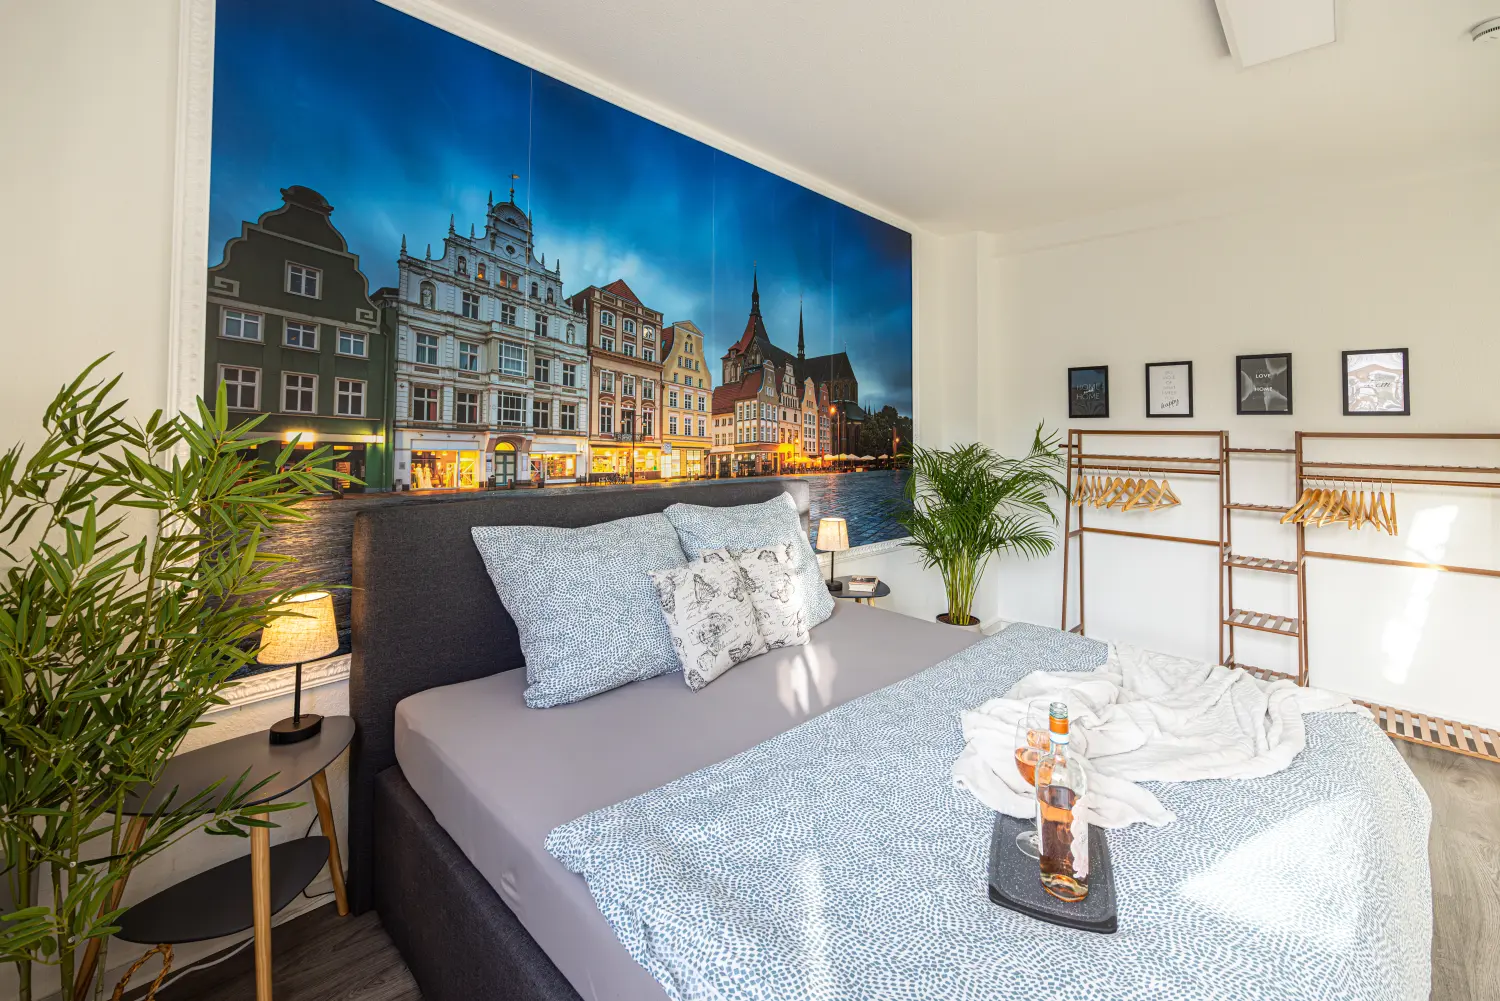 Krafft-Holiday Vermietung Ferienwohnung Rostock Schlafzimmer